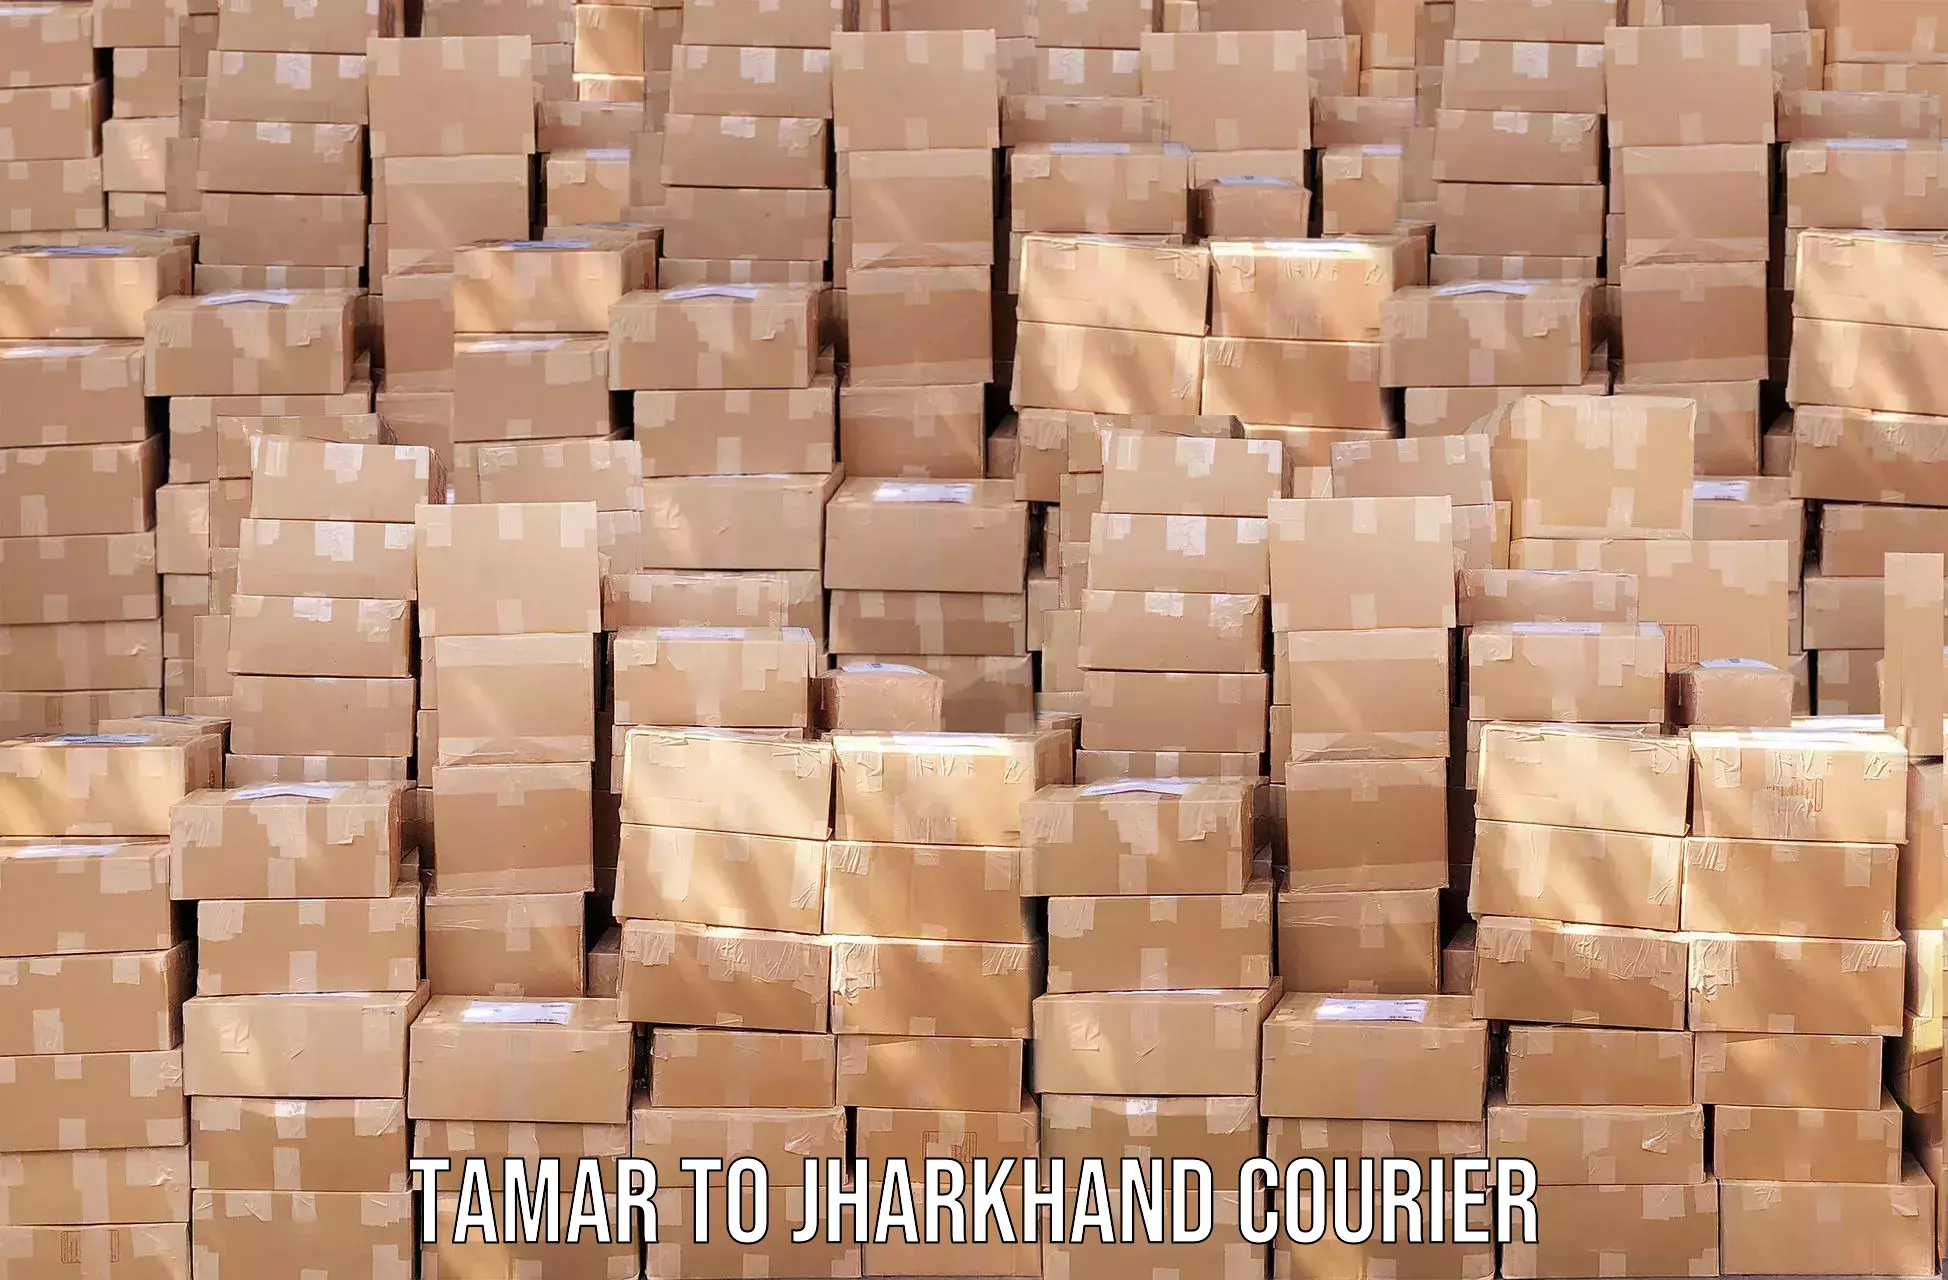 Efficient parcel transport Tamar to Jamshedpur